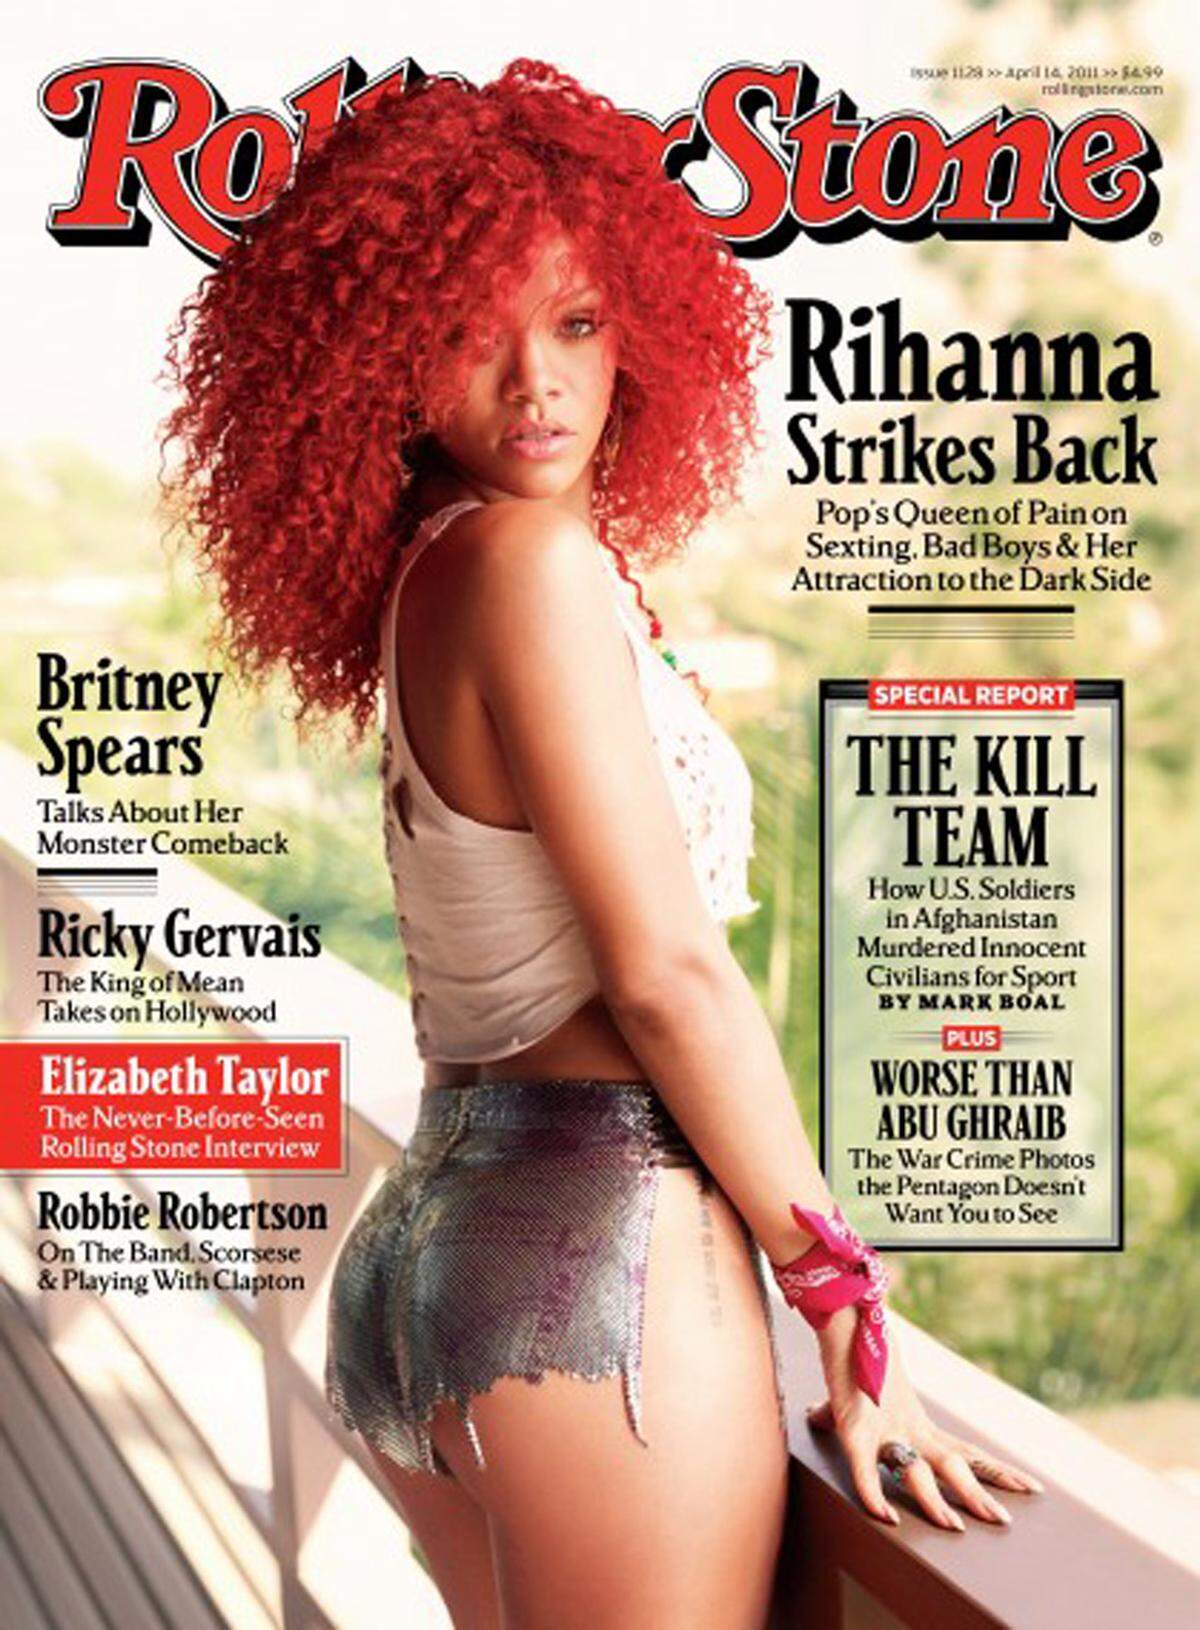 Stars die kaum zu erkennen sind, denen wie Rihanna Kleidungsstücke wegretuschiert werden oder Models, denen Körperteile fehlen. Stark retuschierte Bilder sind alltäglich. 